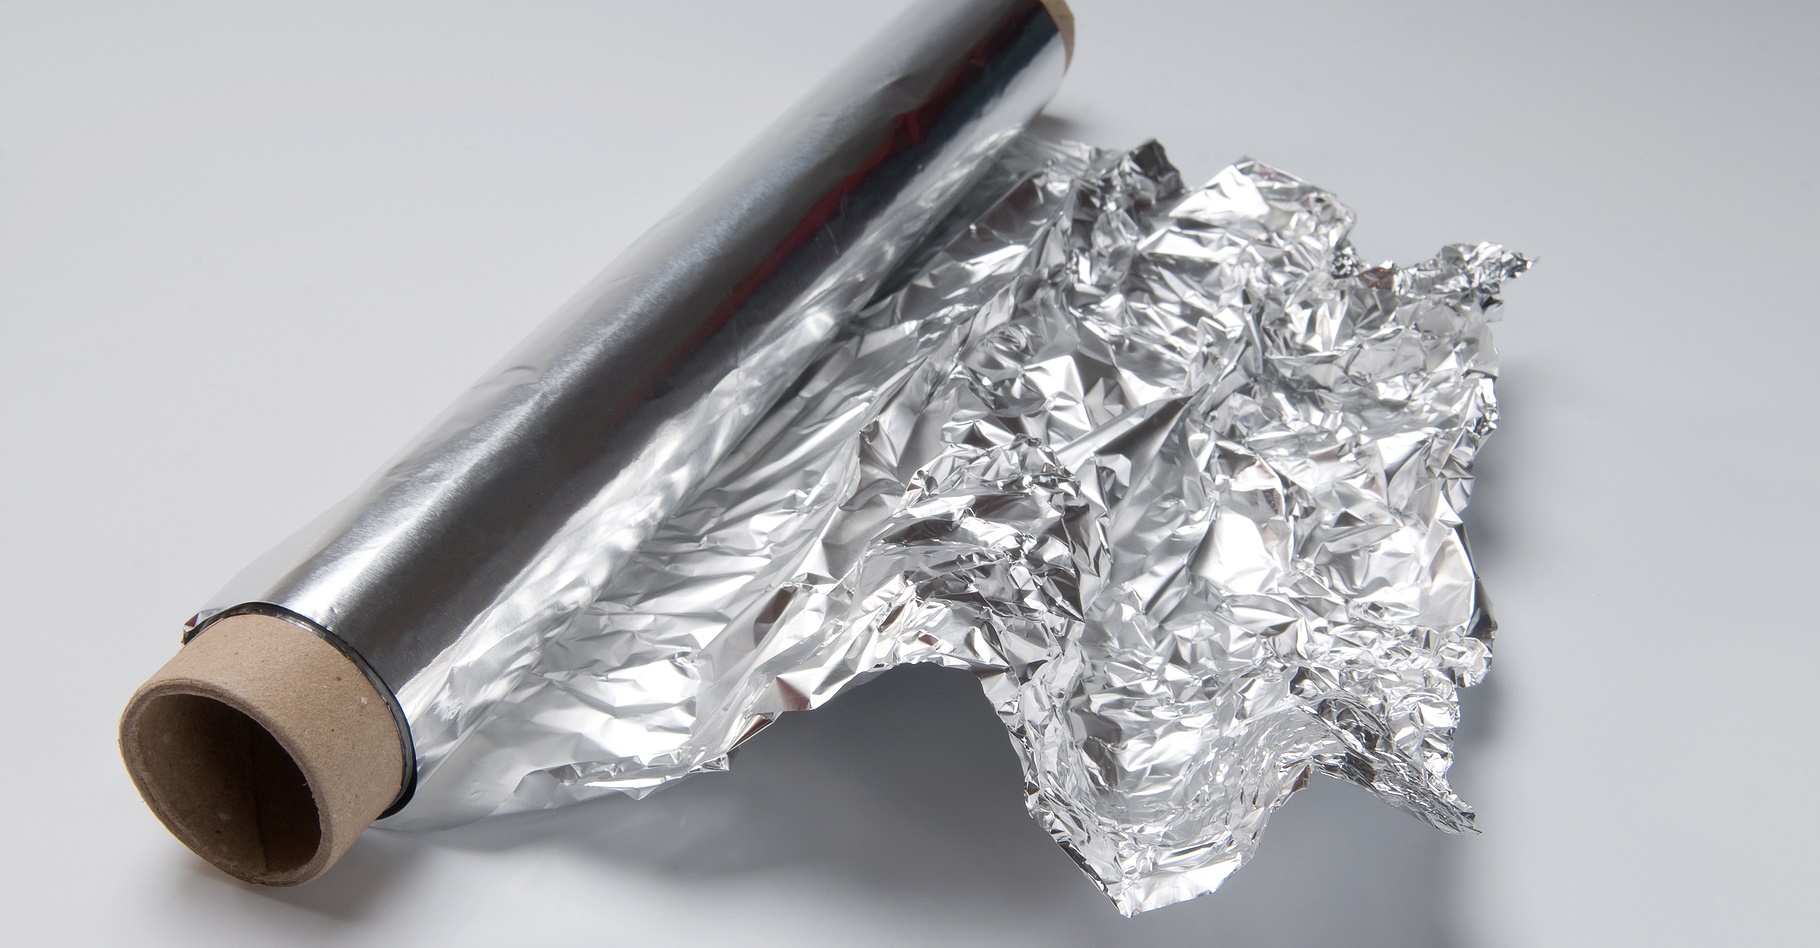 L’aluminium peut se trouver au contact des aliments. Faut-il s’en méfier ? Quels sont les dangers ? © Lorena Fernandez, Shutterstock